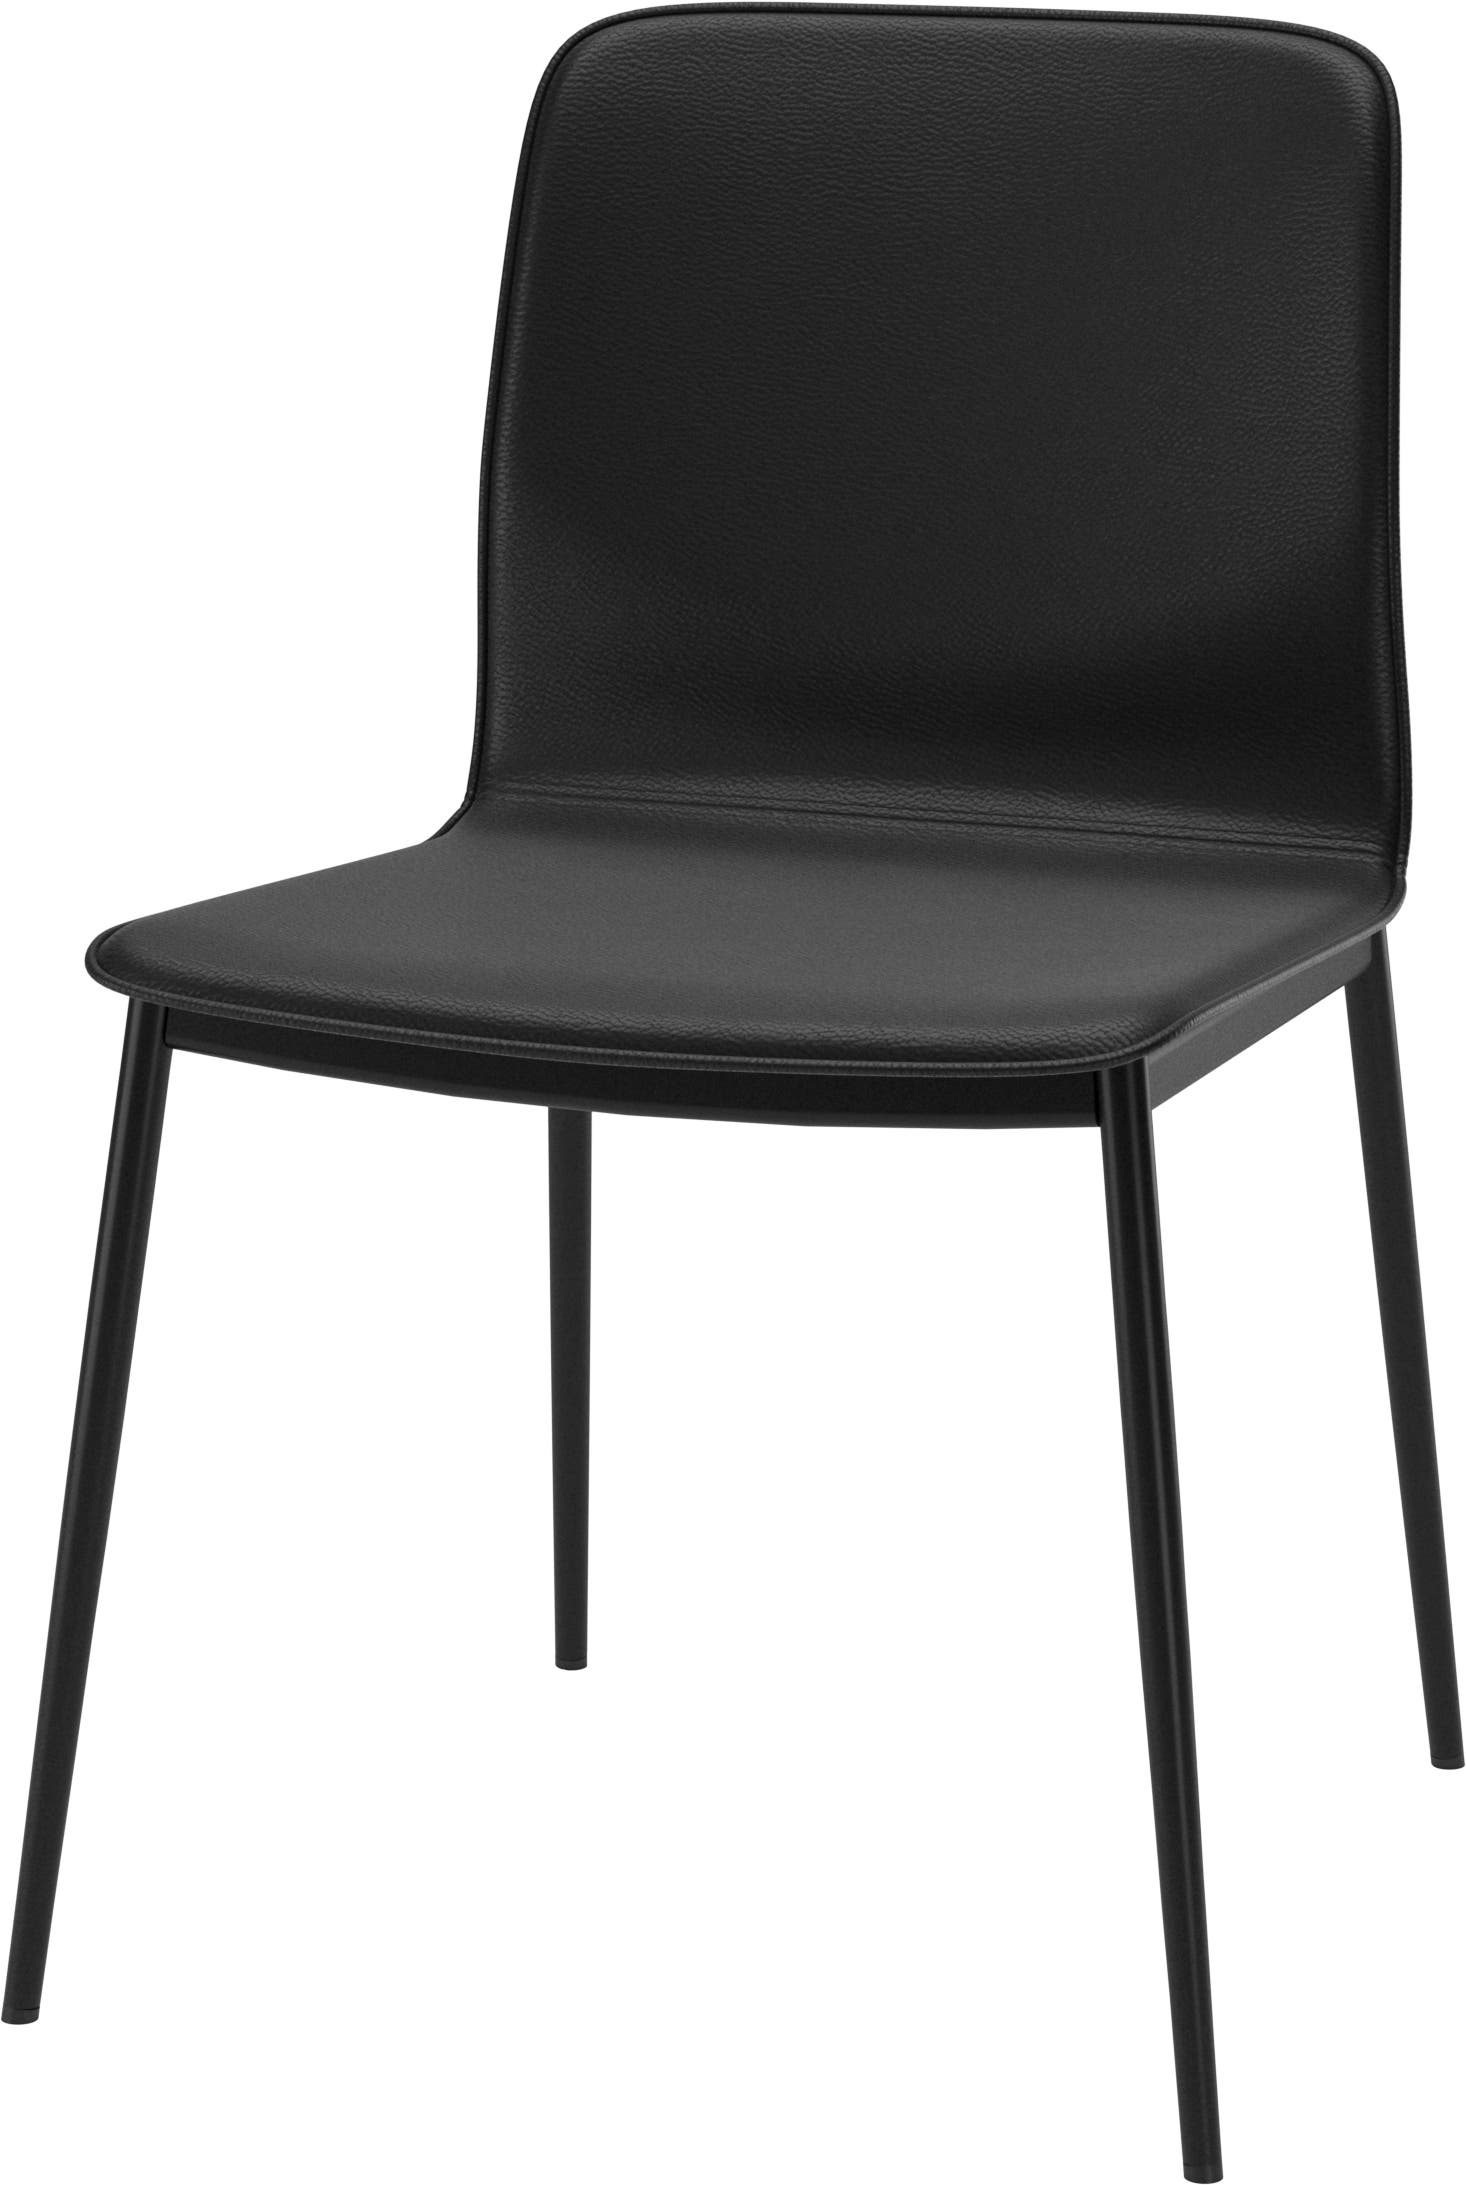 Jídelní židle Newport